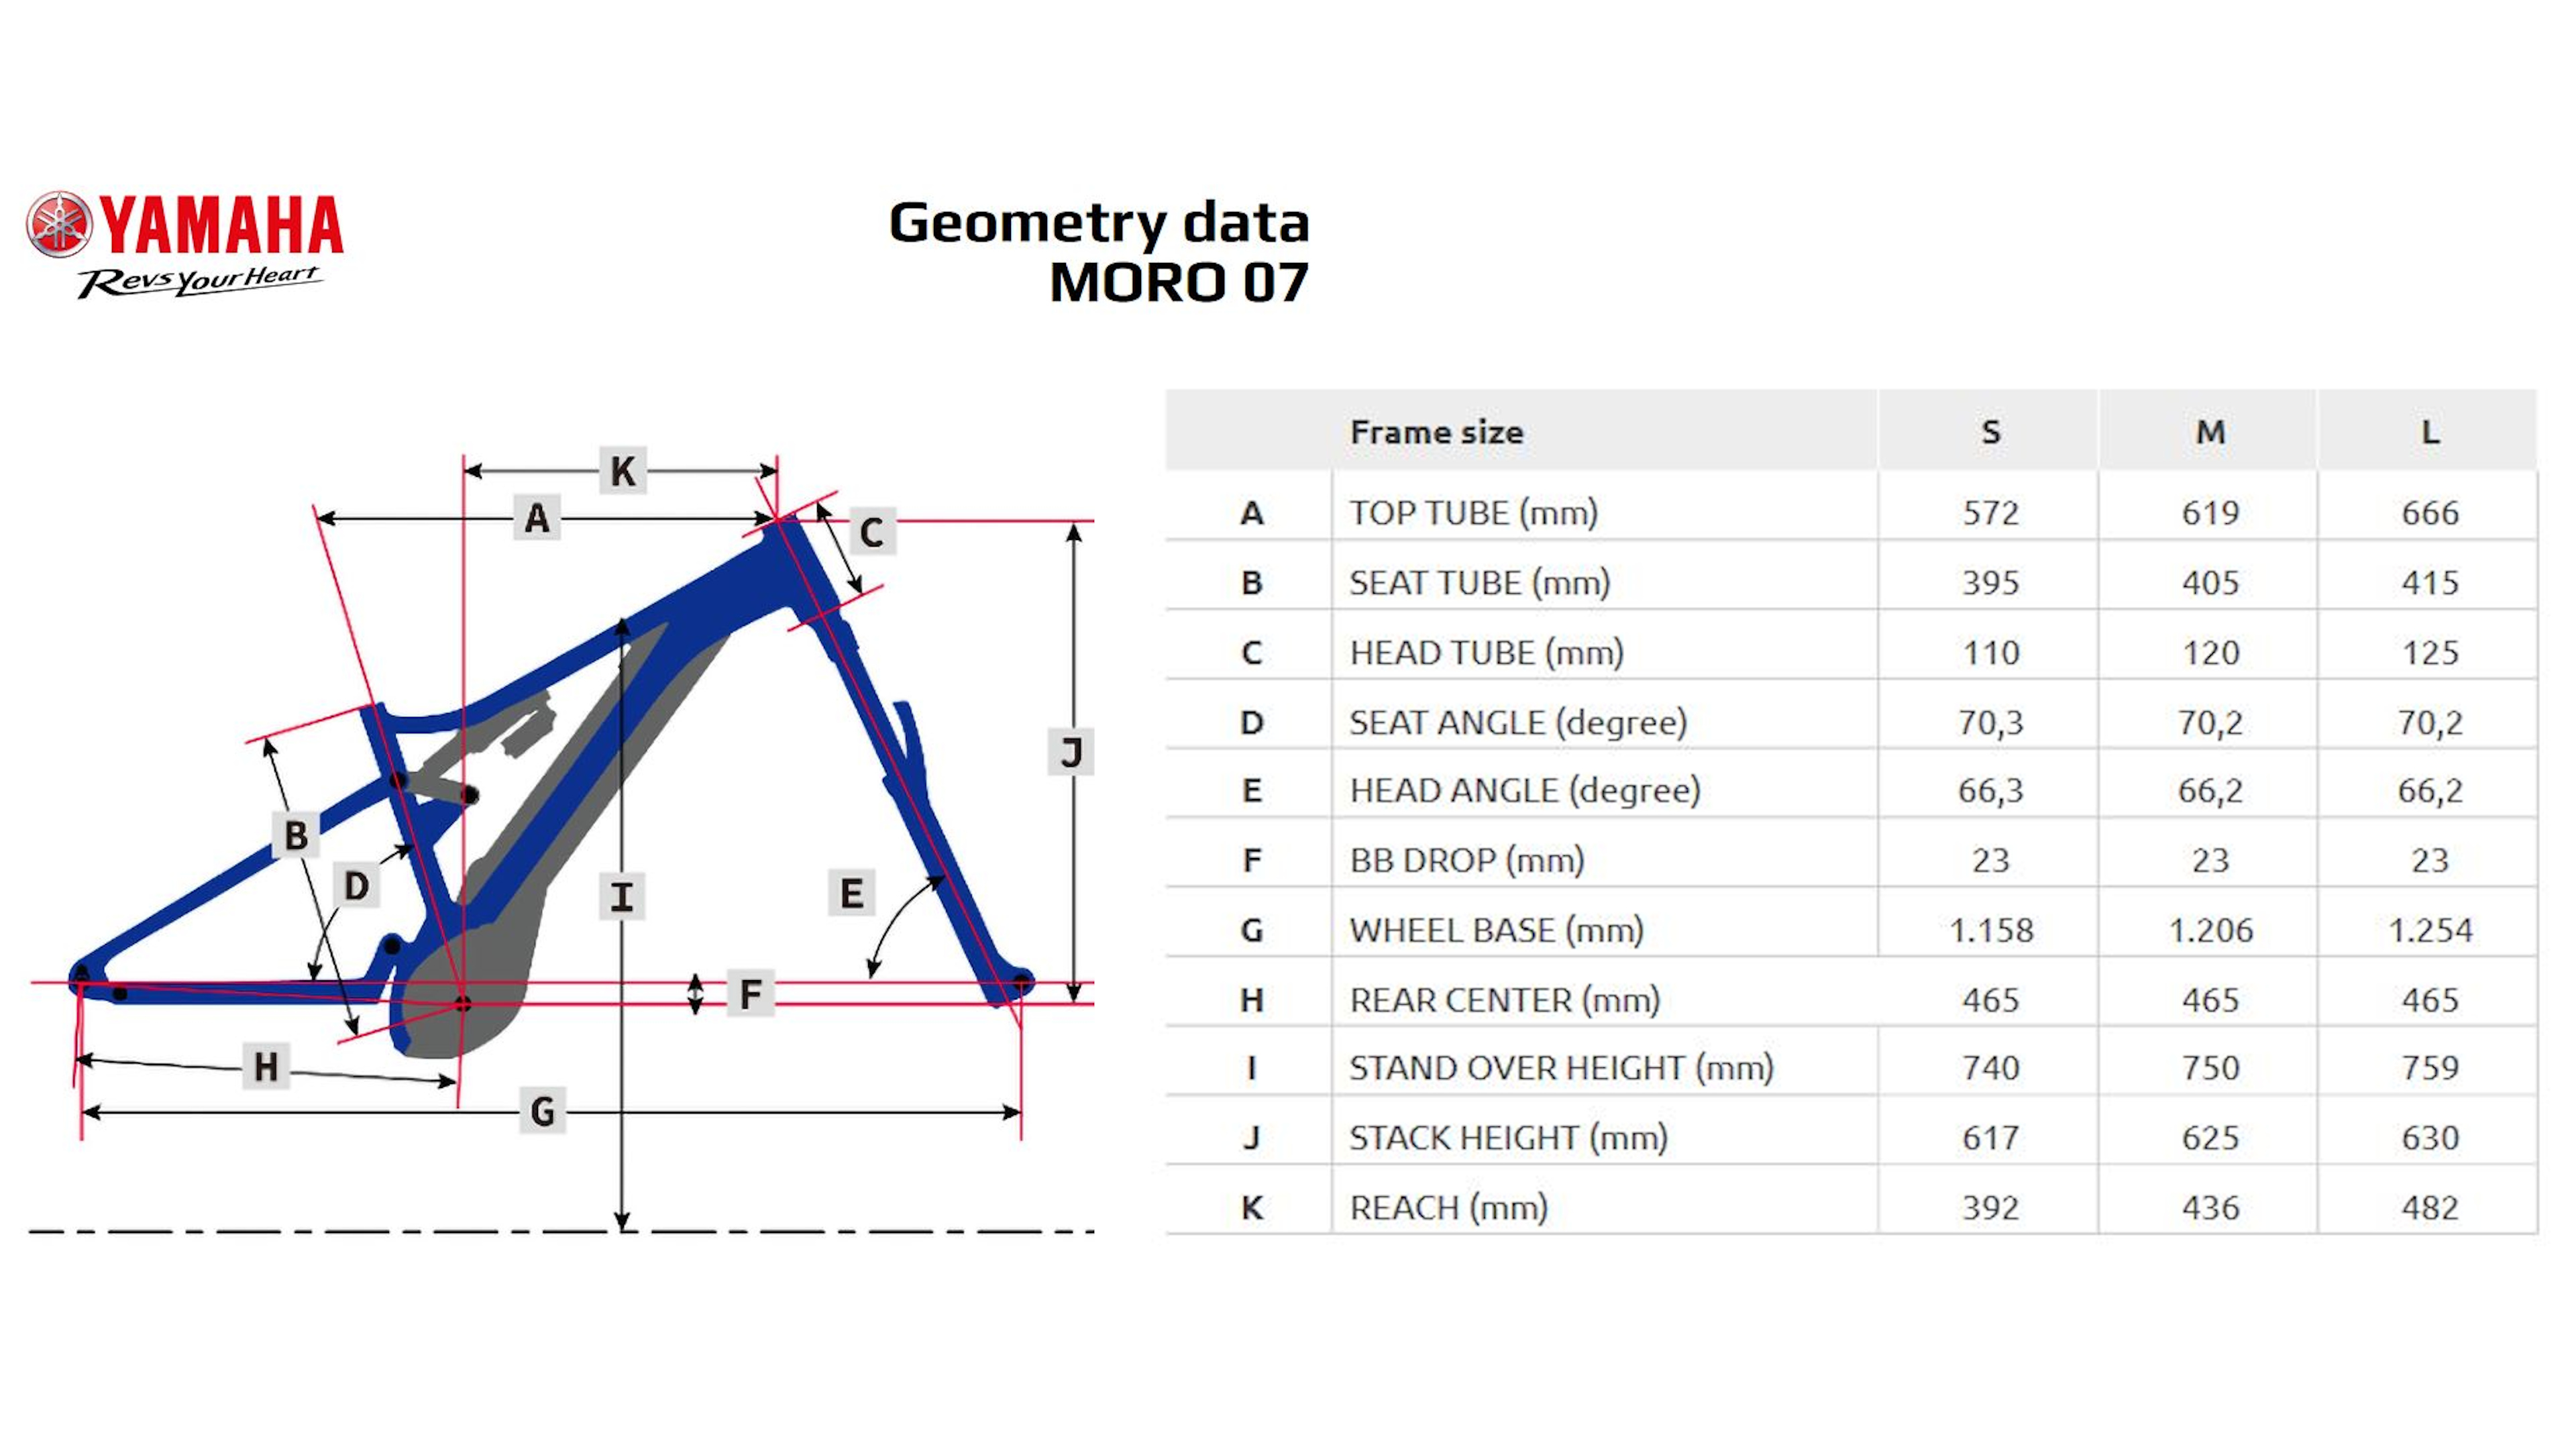 Yamaha MORO-07 geometry